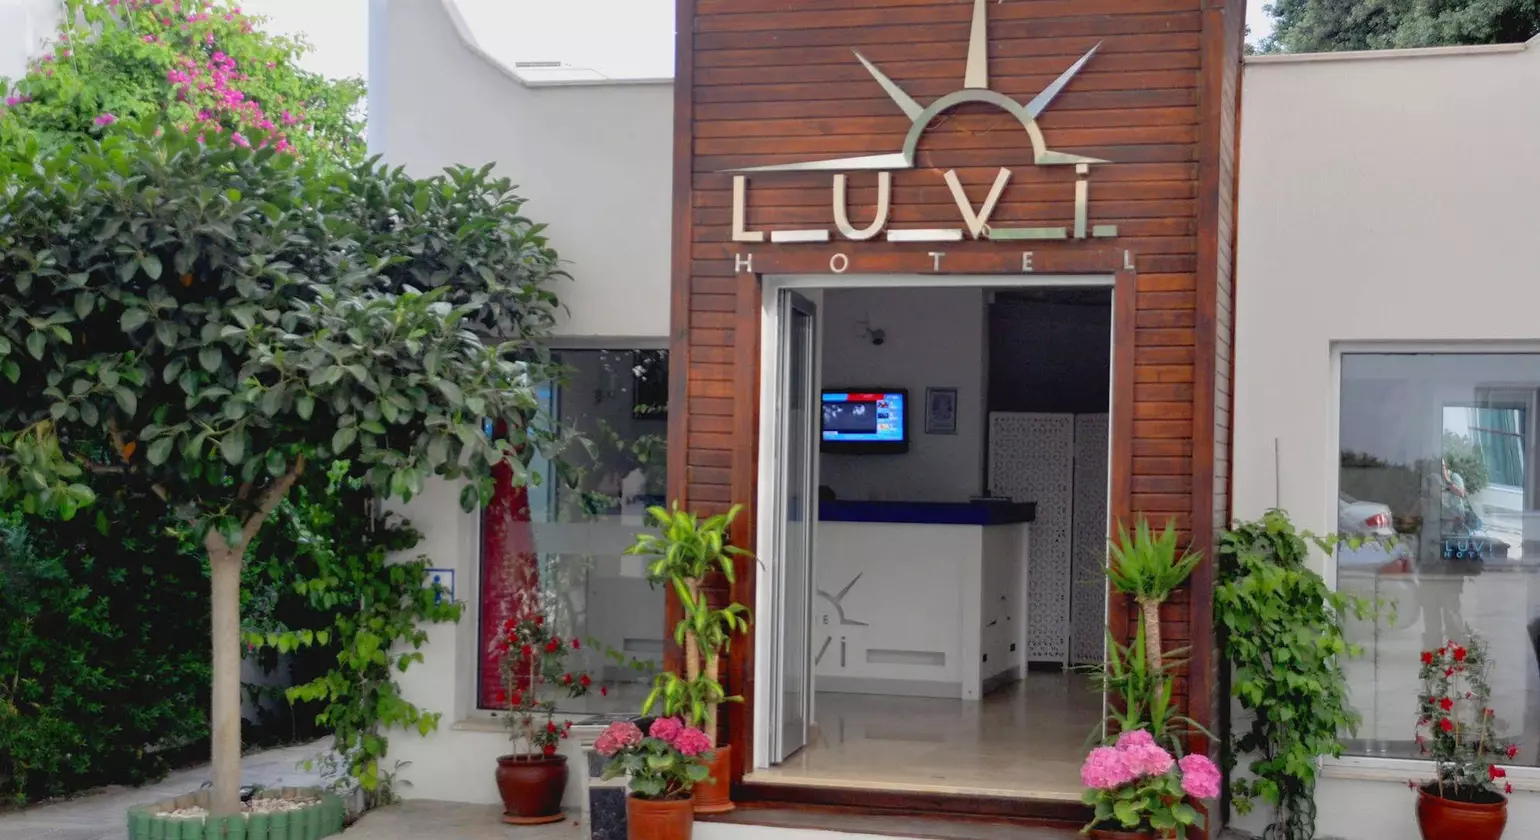 The Luvi Hotel